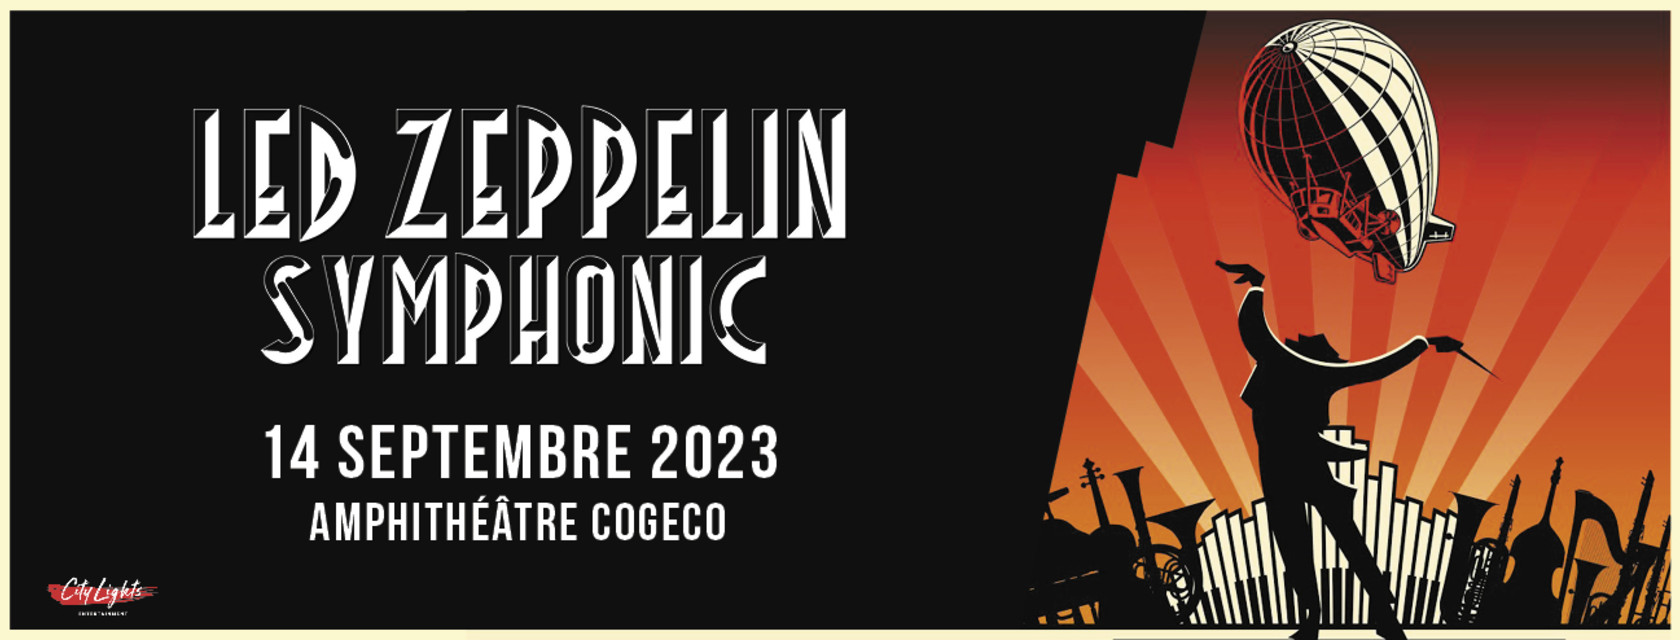 Après Londres et Athènes la grande tournée mondiale Led Zeppelin Symphonic s’arrête à  l’Amphithéâtre Cogeco de Trois-Rivières!